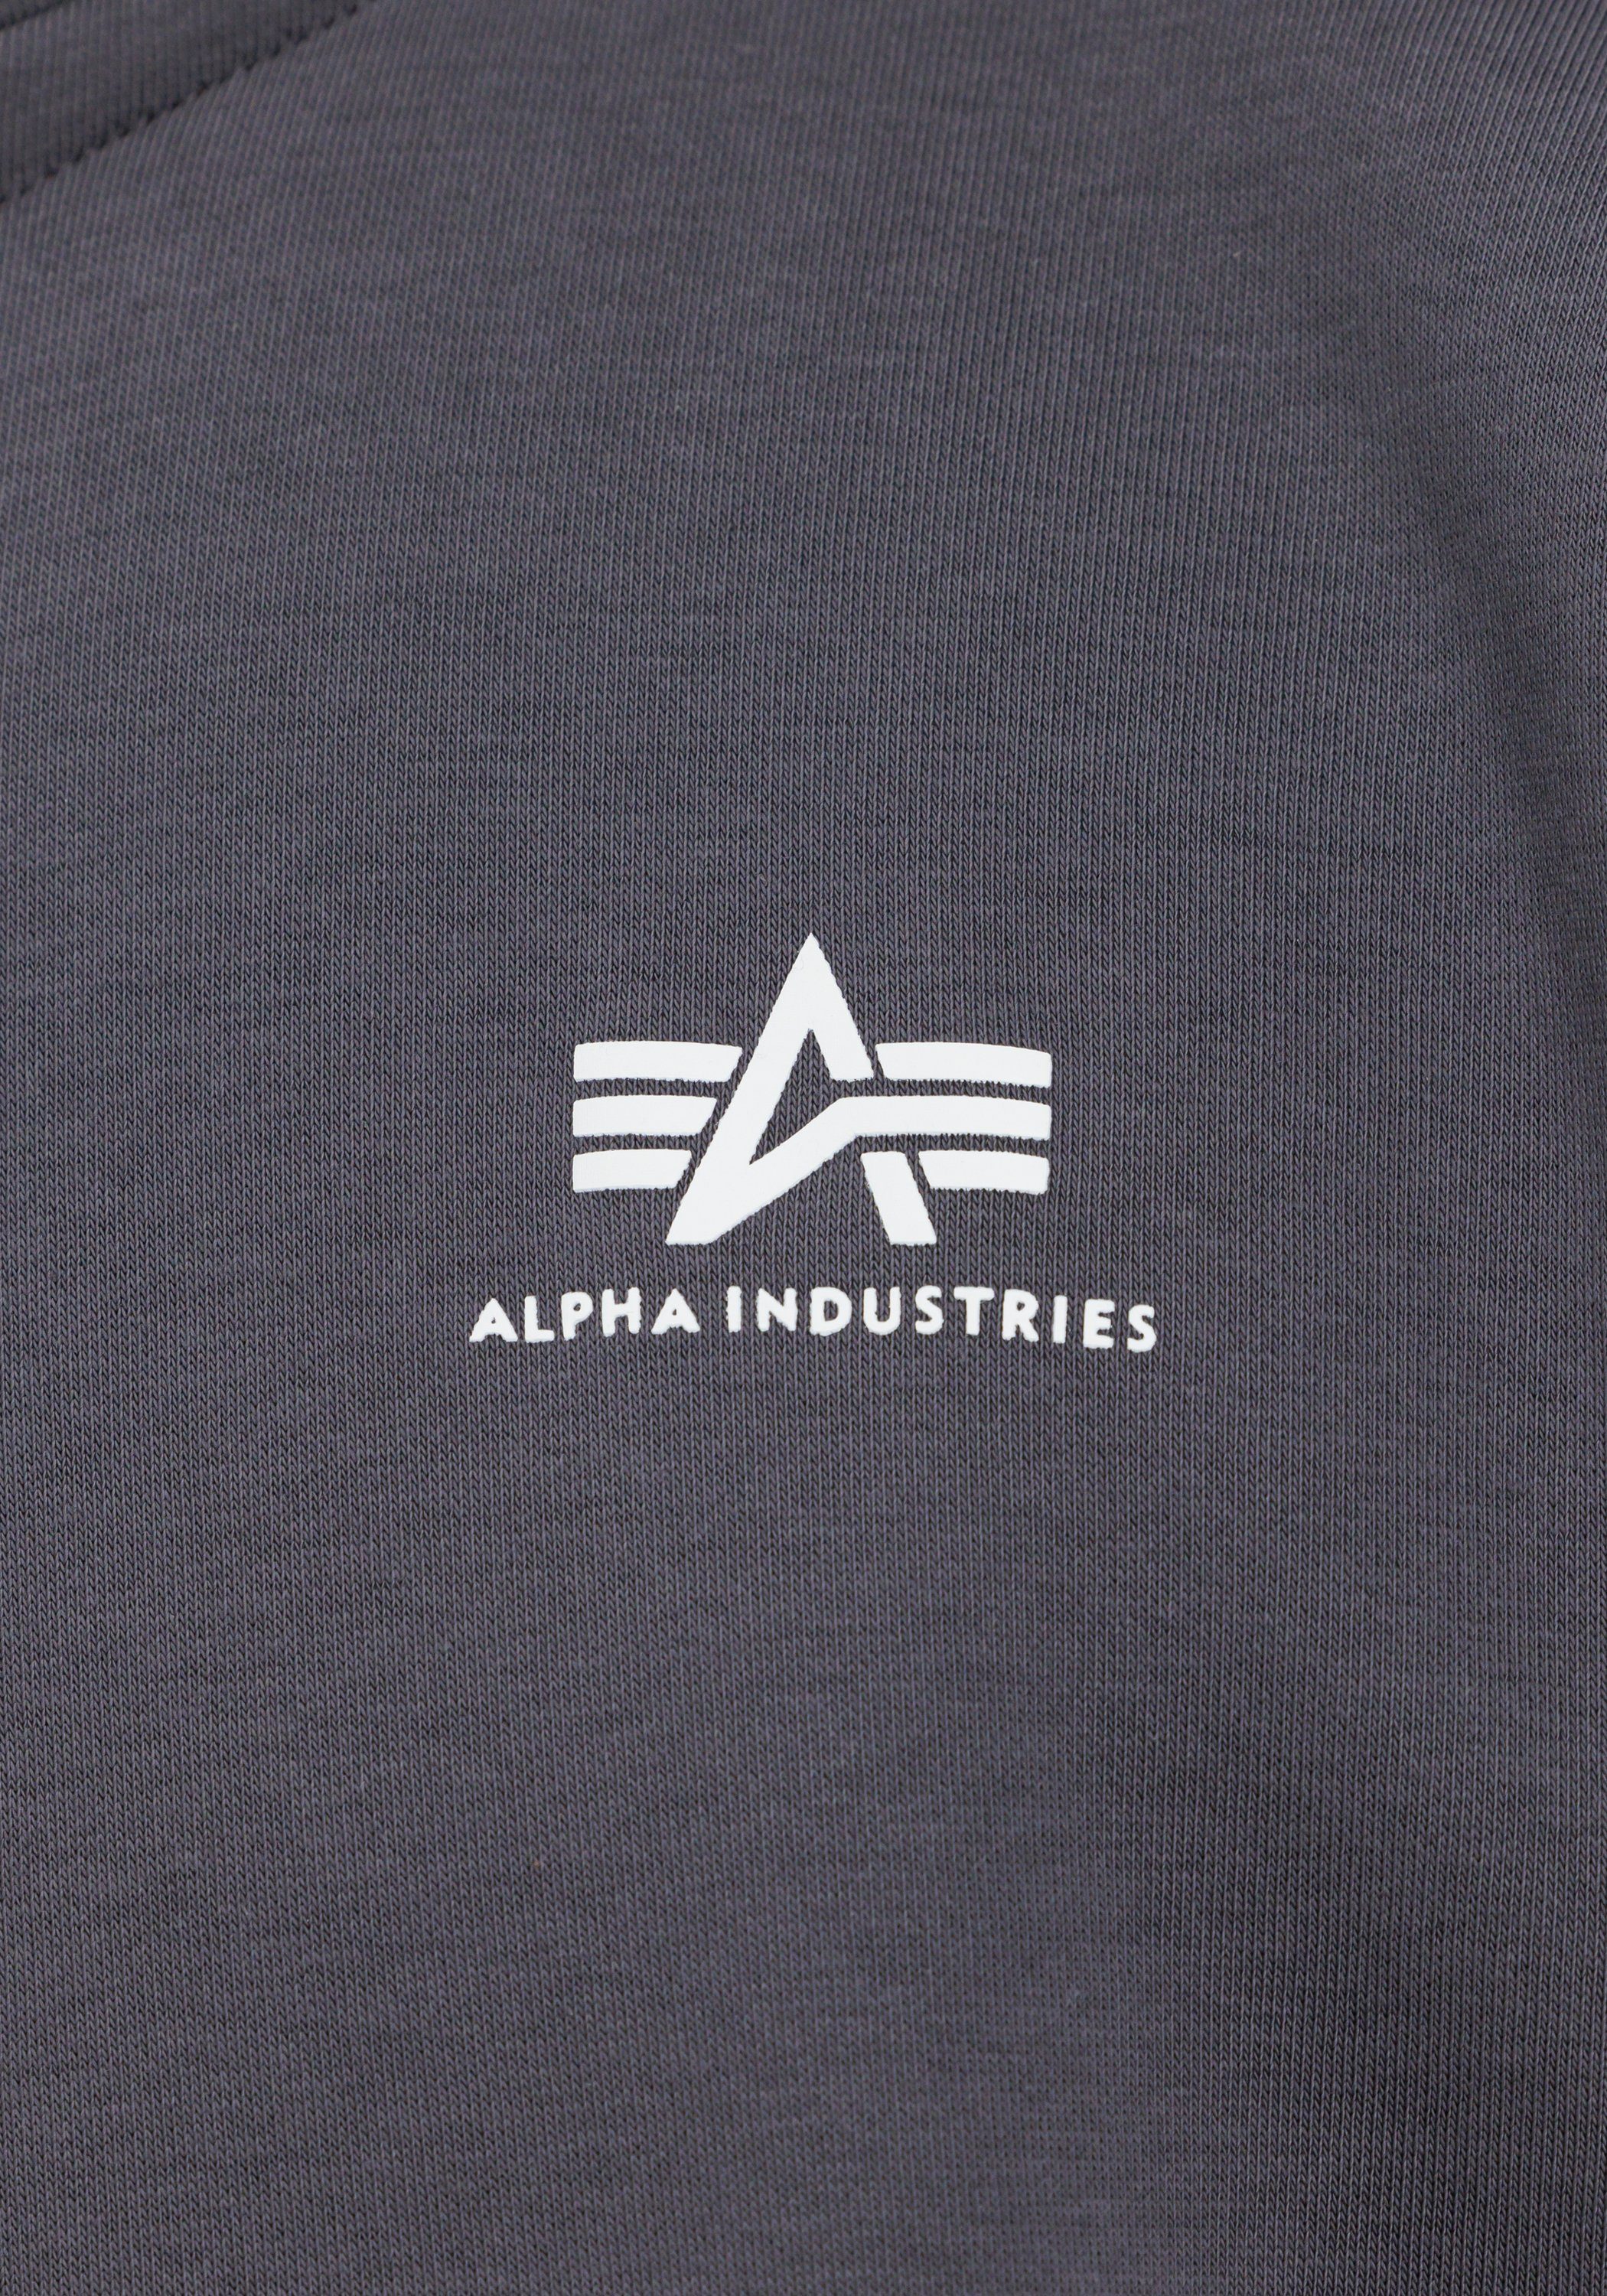 Zip Alpha - Sweater Sweater Half vintage Men grey Industries SL Industries Sweatshirts Alpha